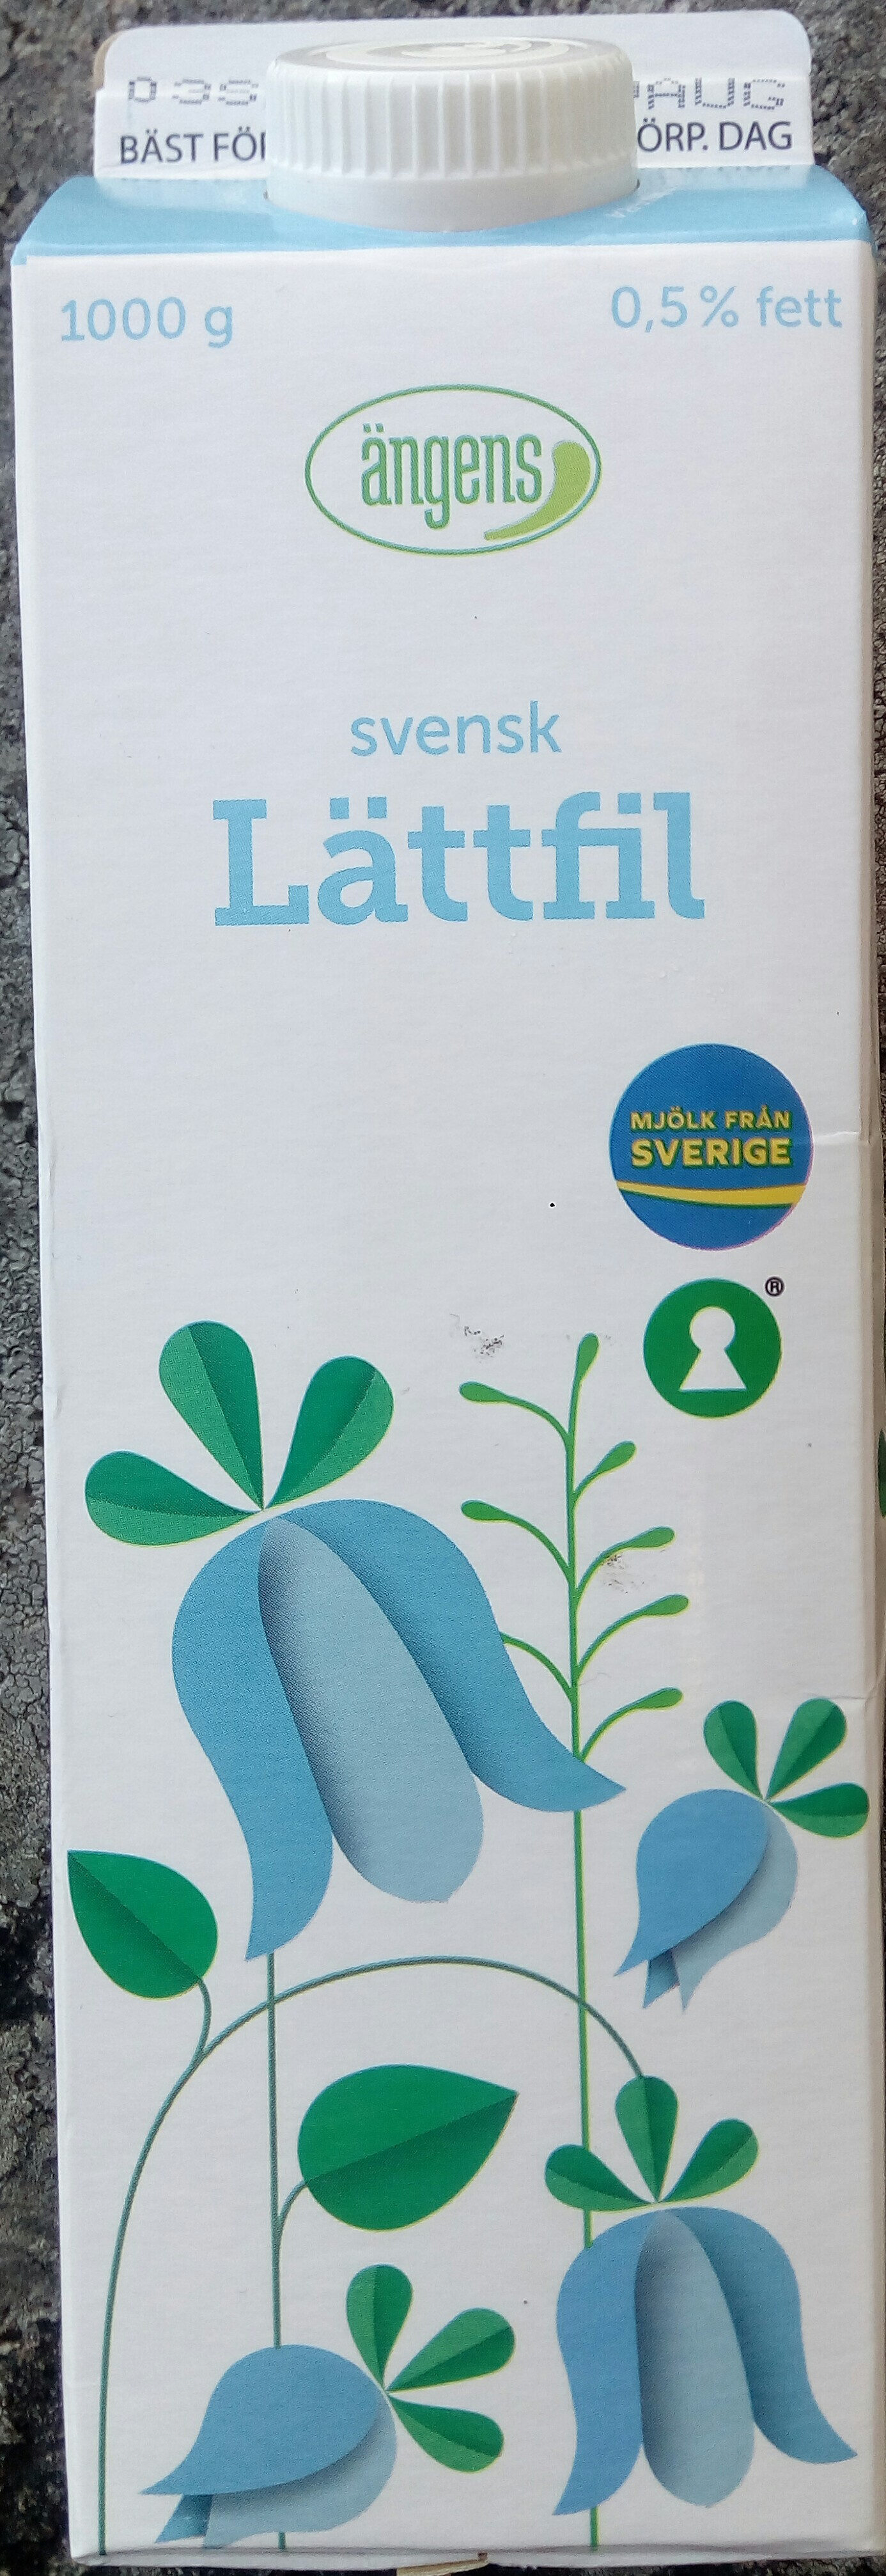 Ängens svensk Lättfil - Product - sv